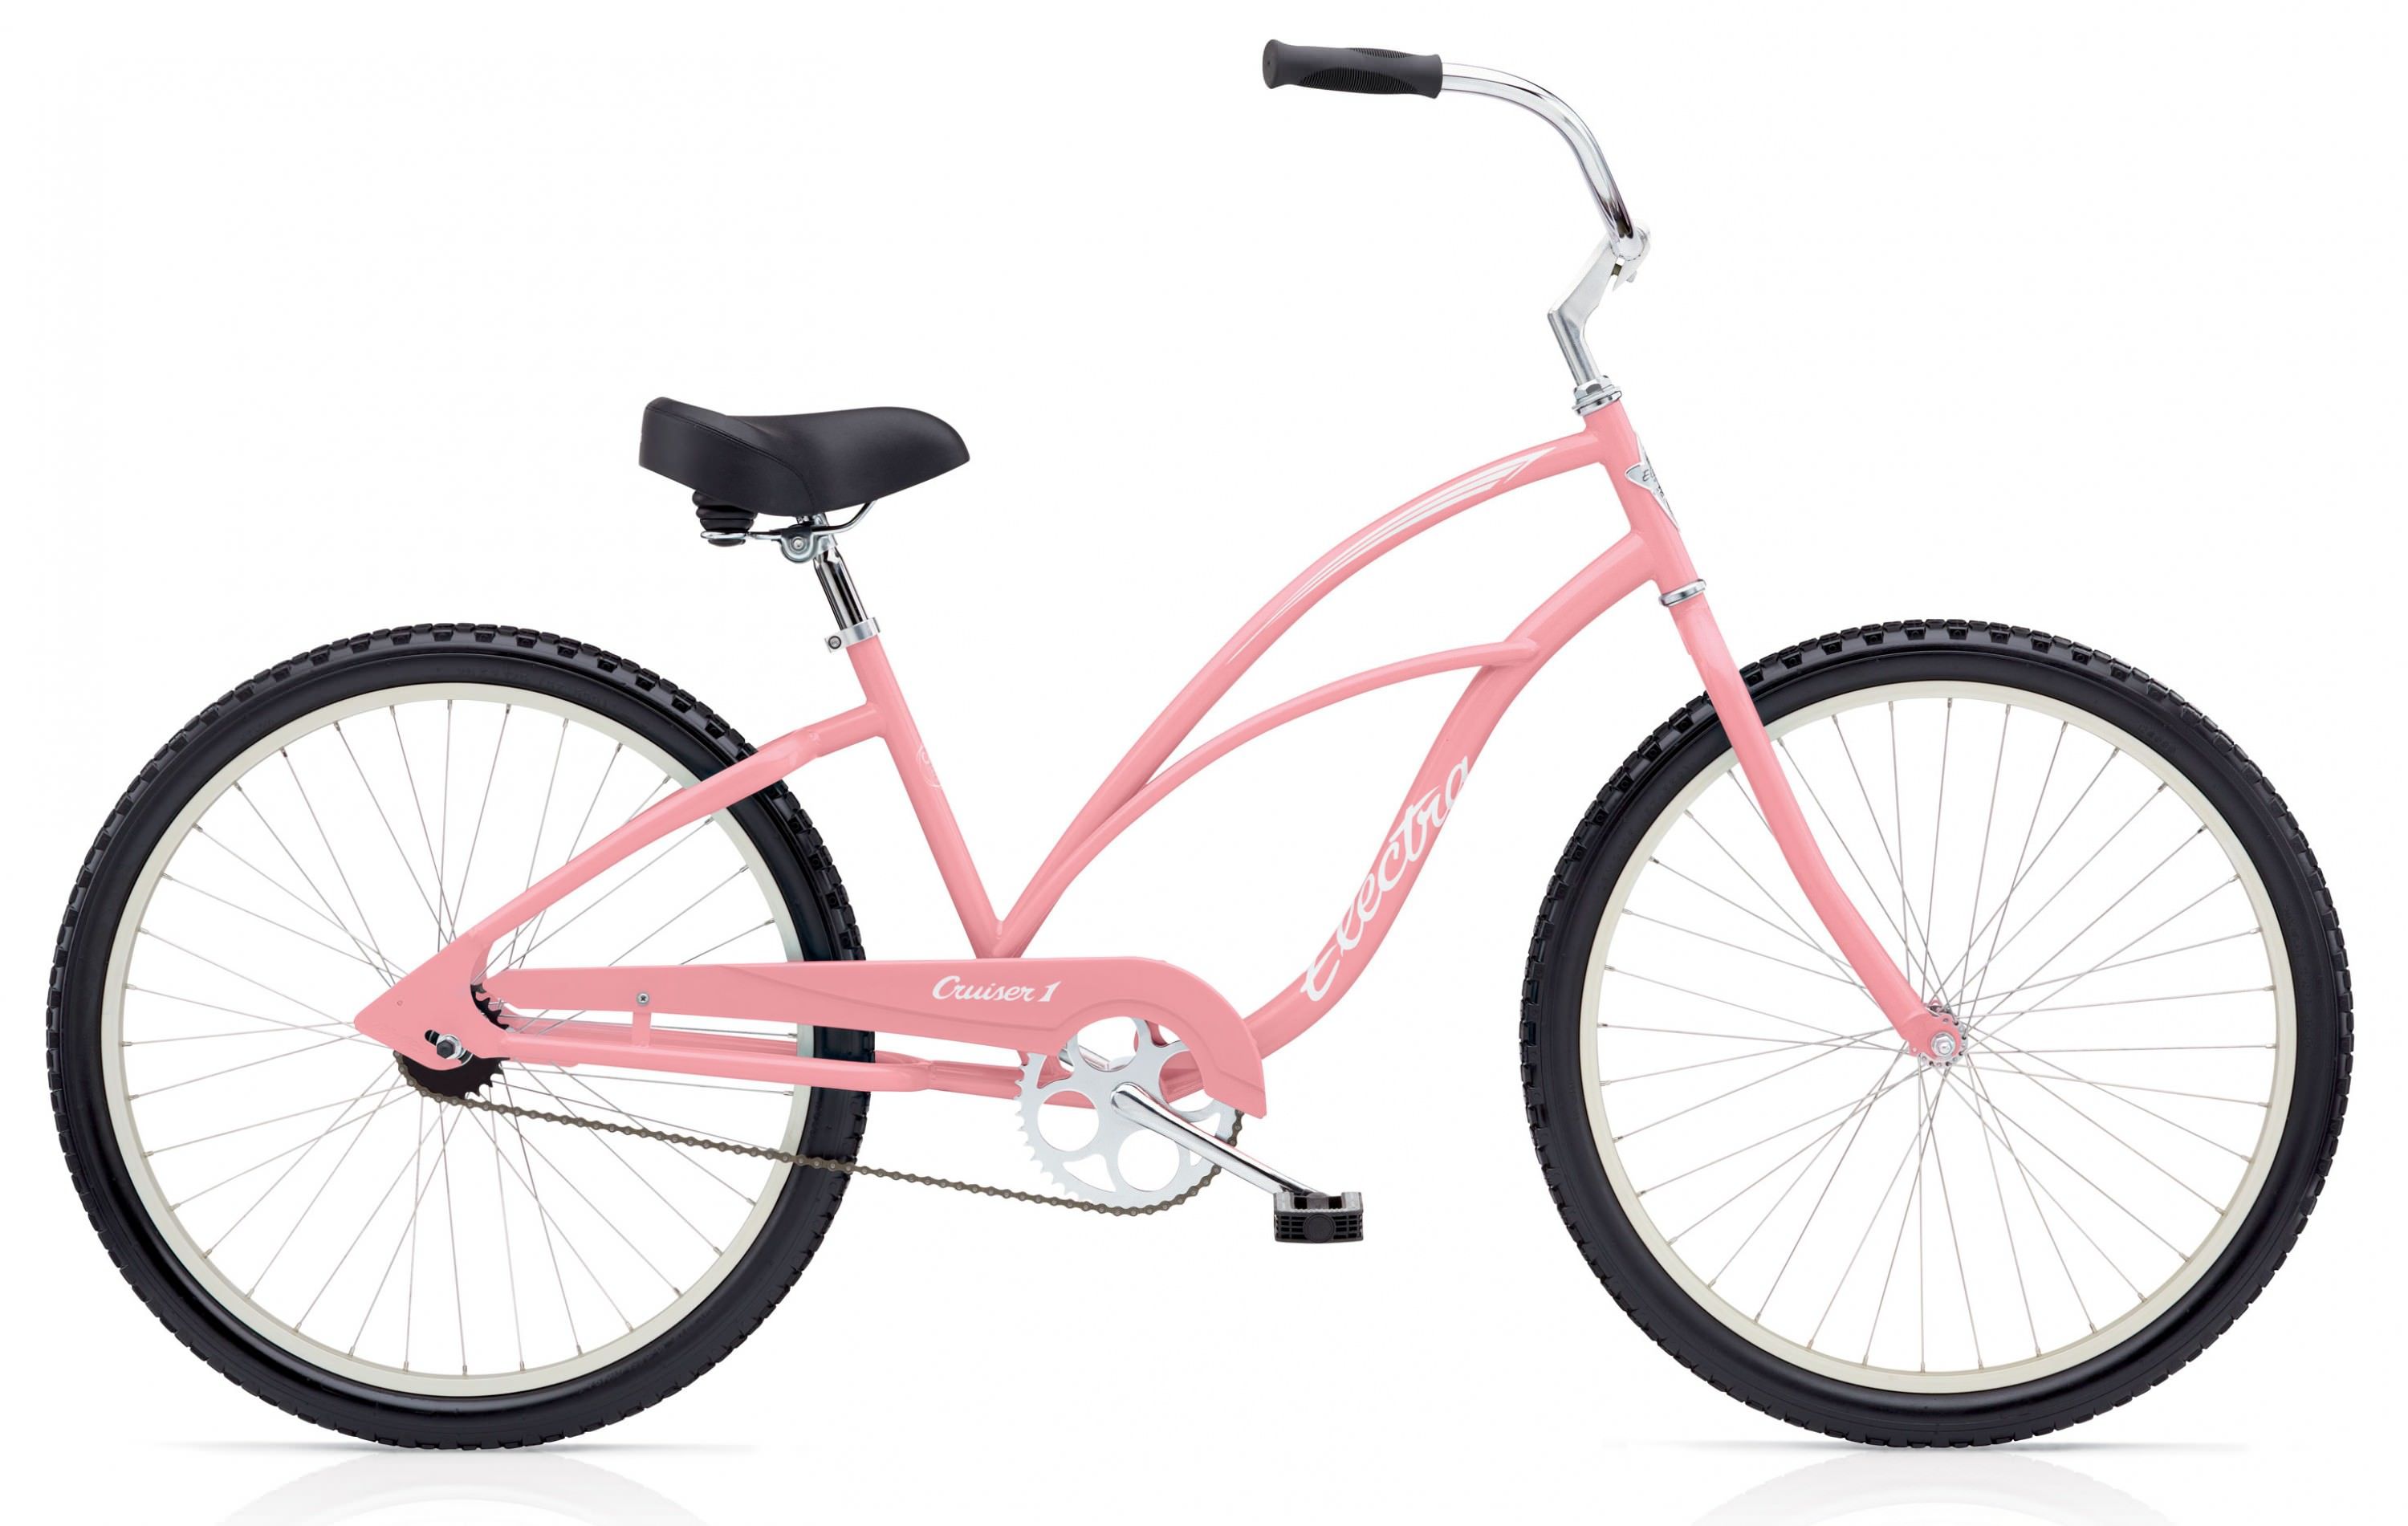  Отзывы о Детском велосипеде Electra Cruiser 1 24 Ladies 2017